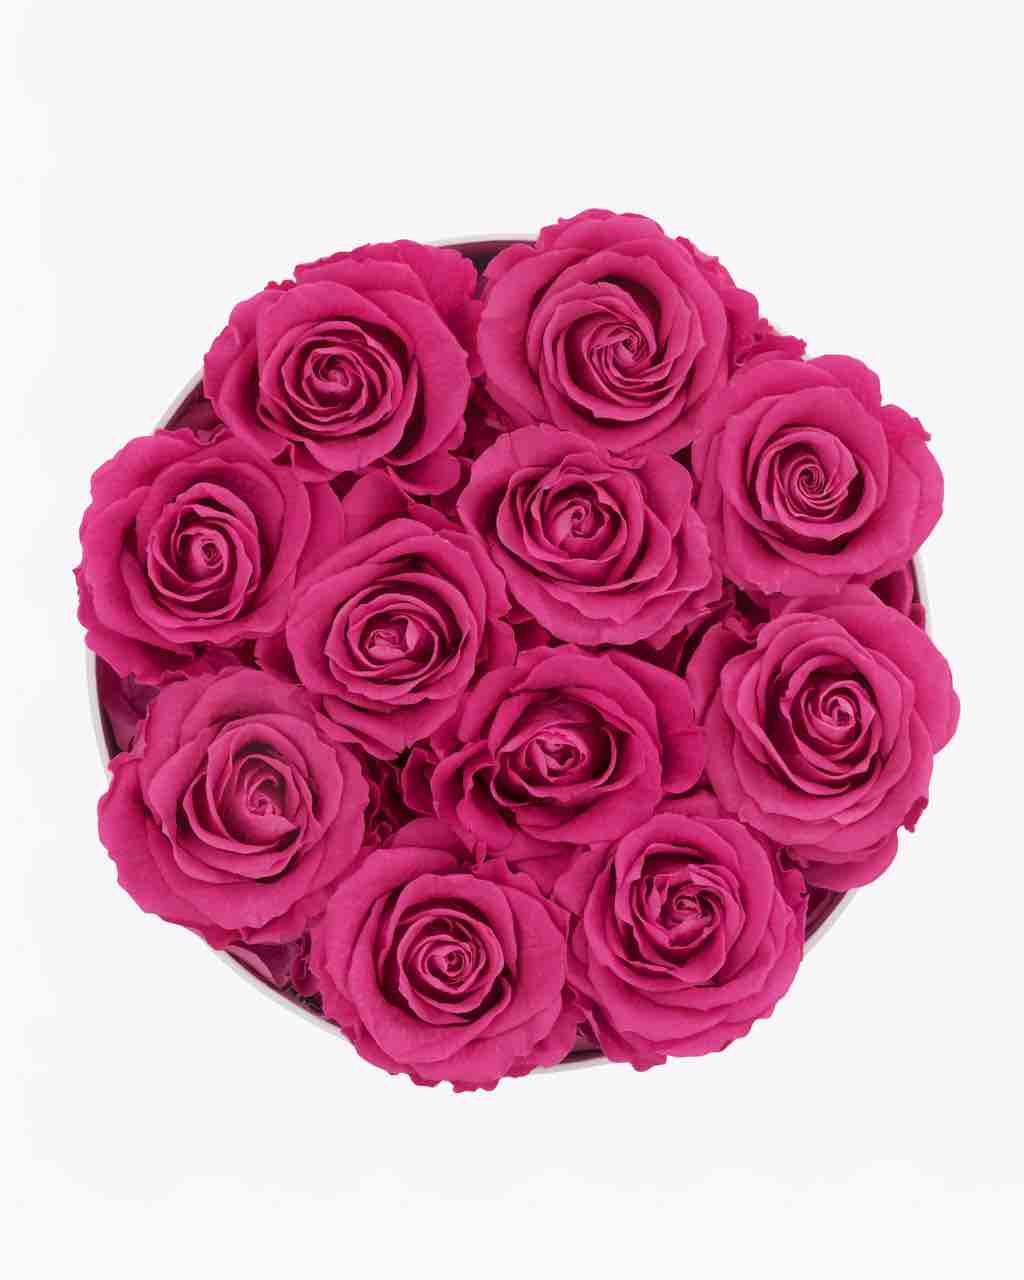 Rose Box - Medium Round Luxury Box